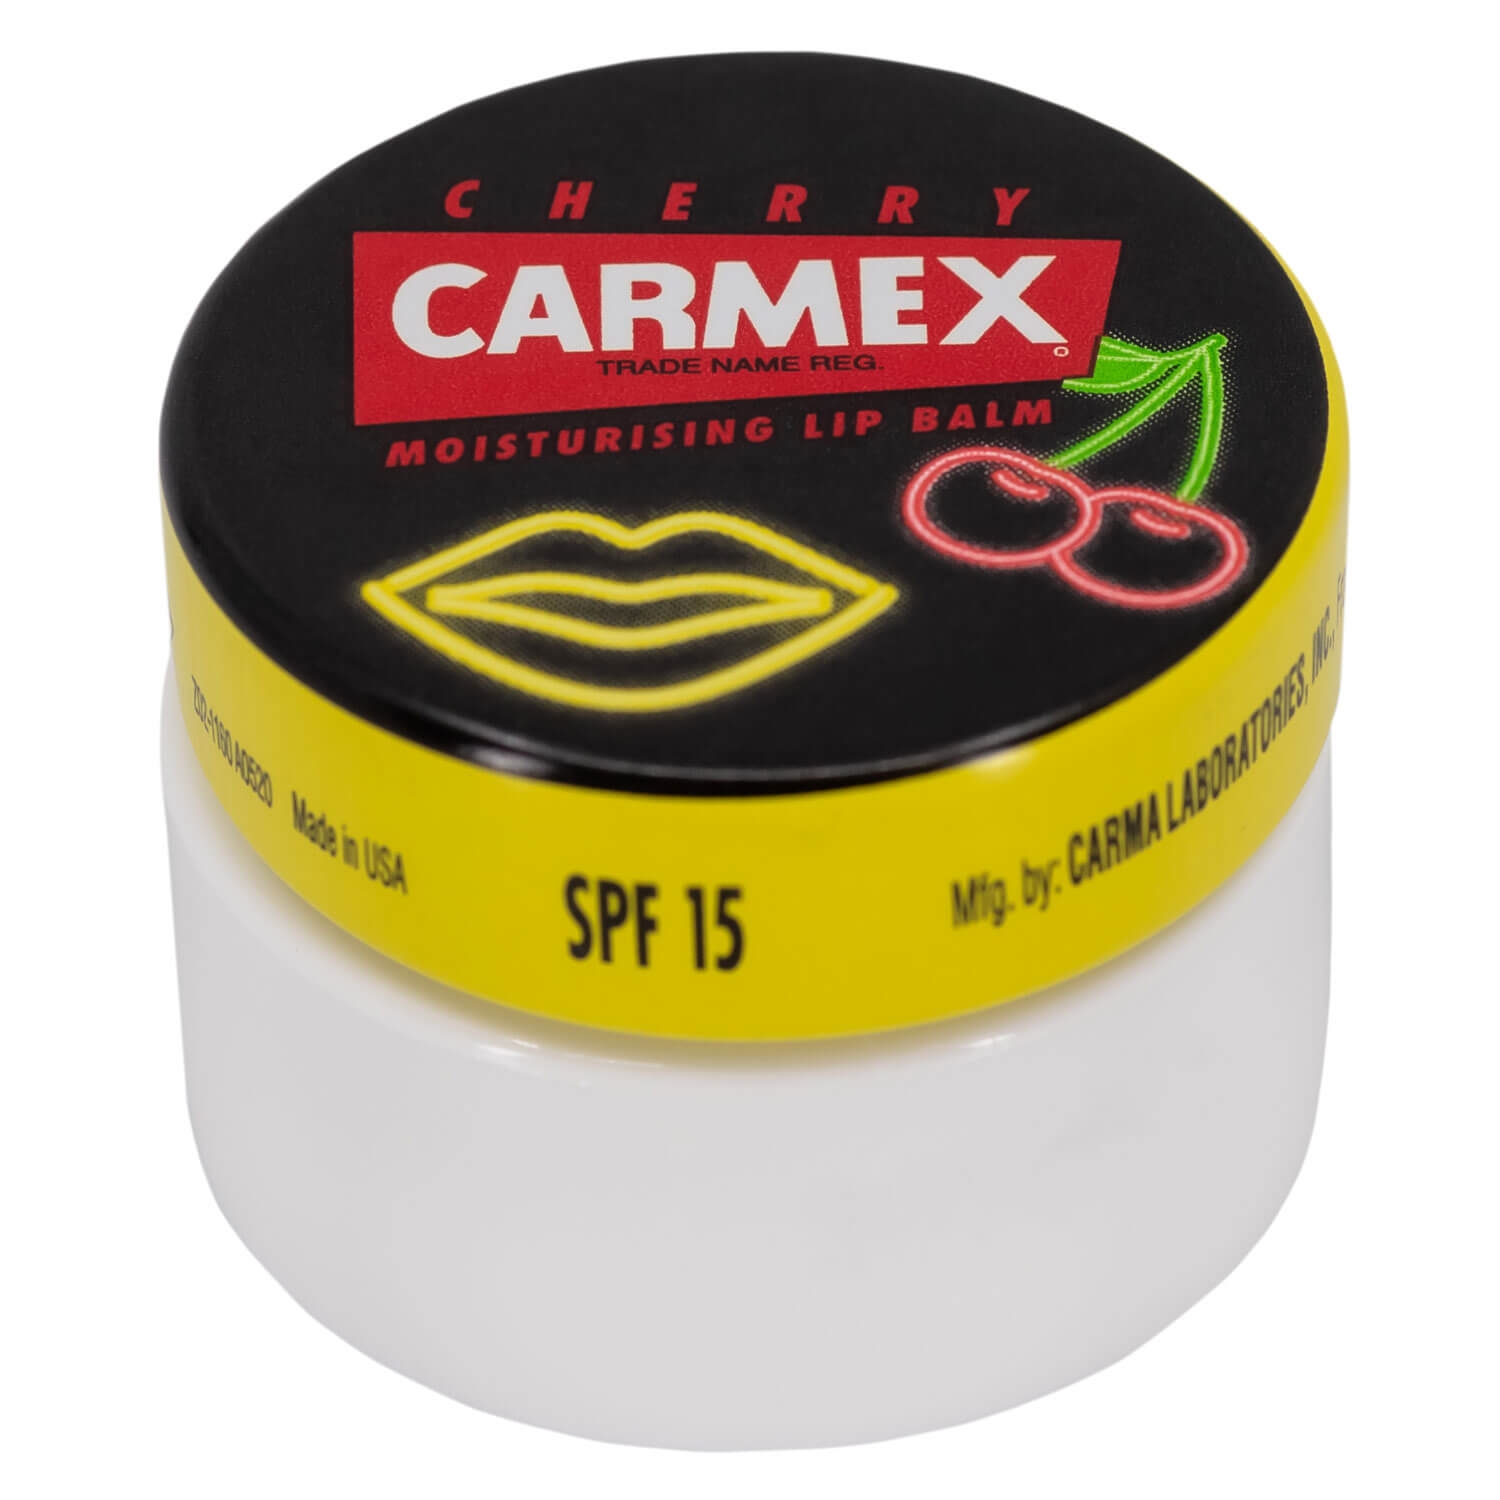 Produktbild von CARMEX - Moisturising Lip Balm Cherry Neon Jar Limited Edition